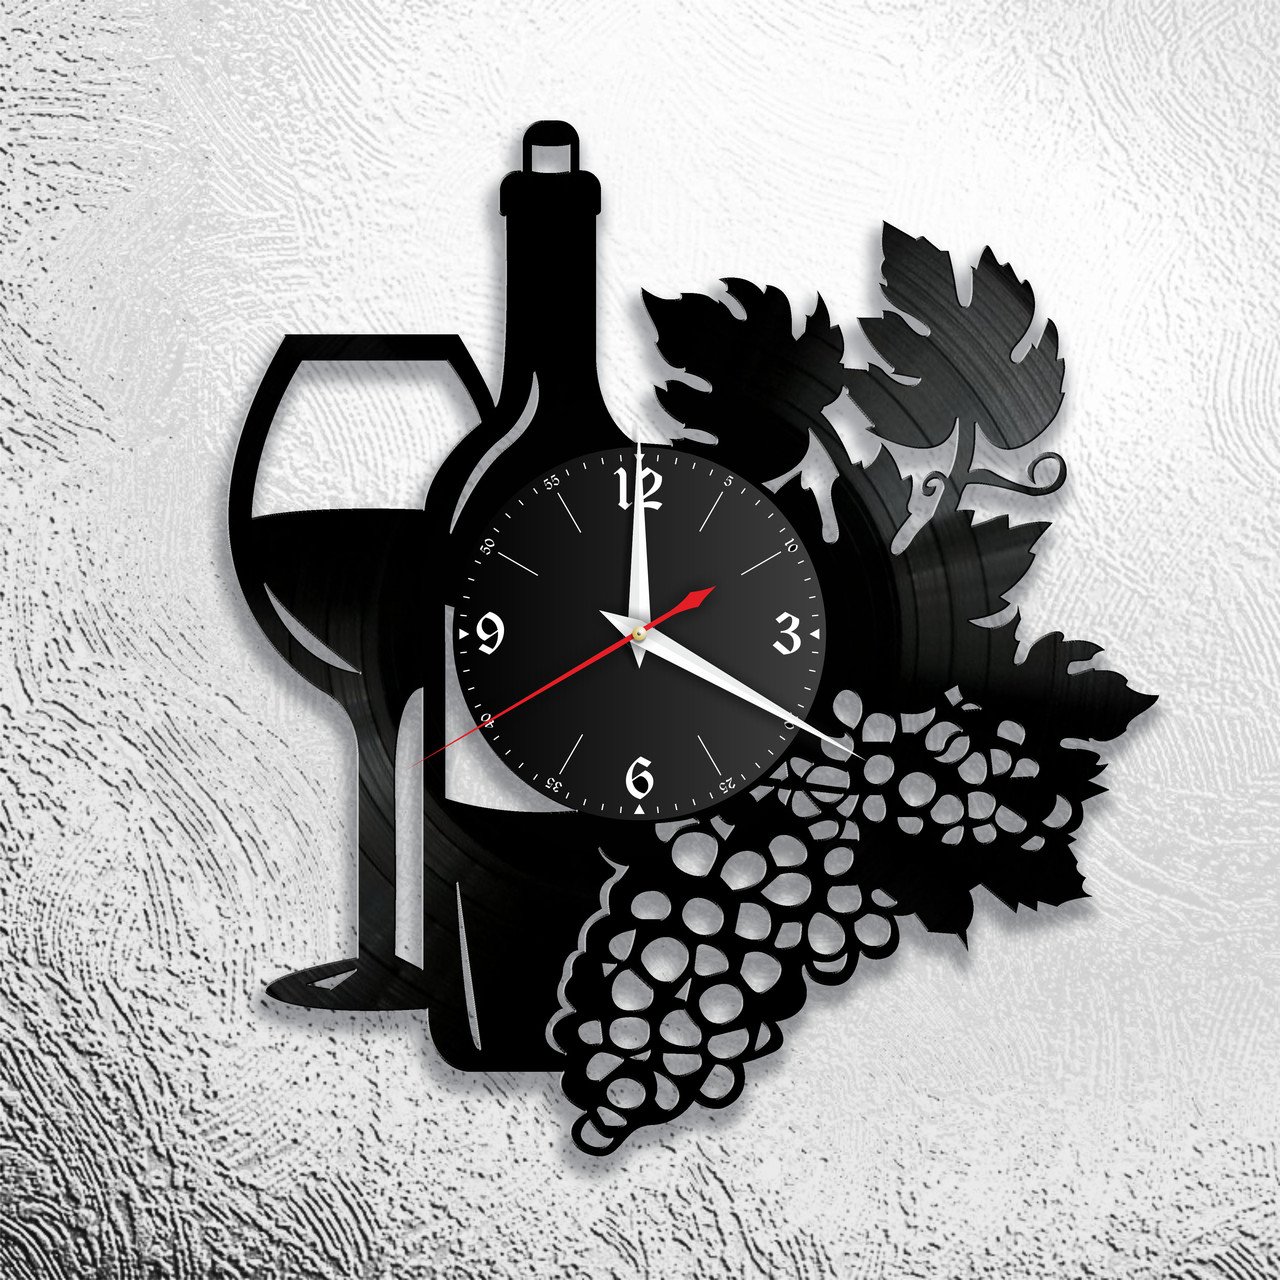 Оригинальные часы из виниловых пластинок "Вино" Версия 1, фото 1